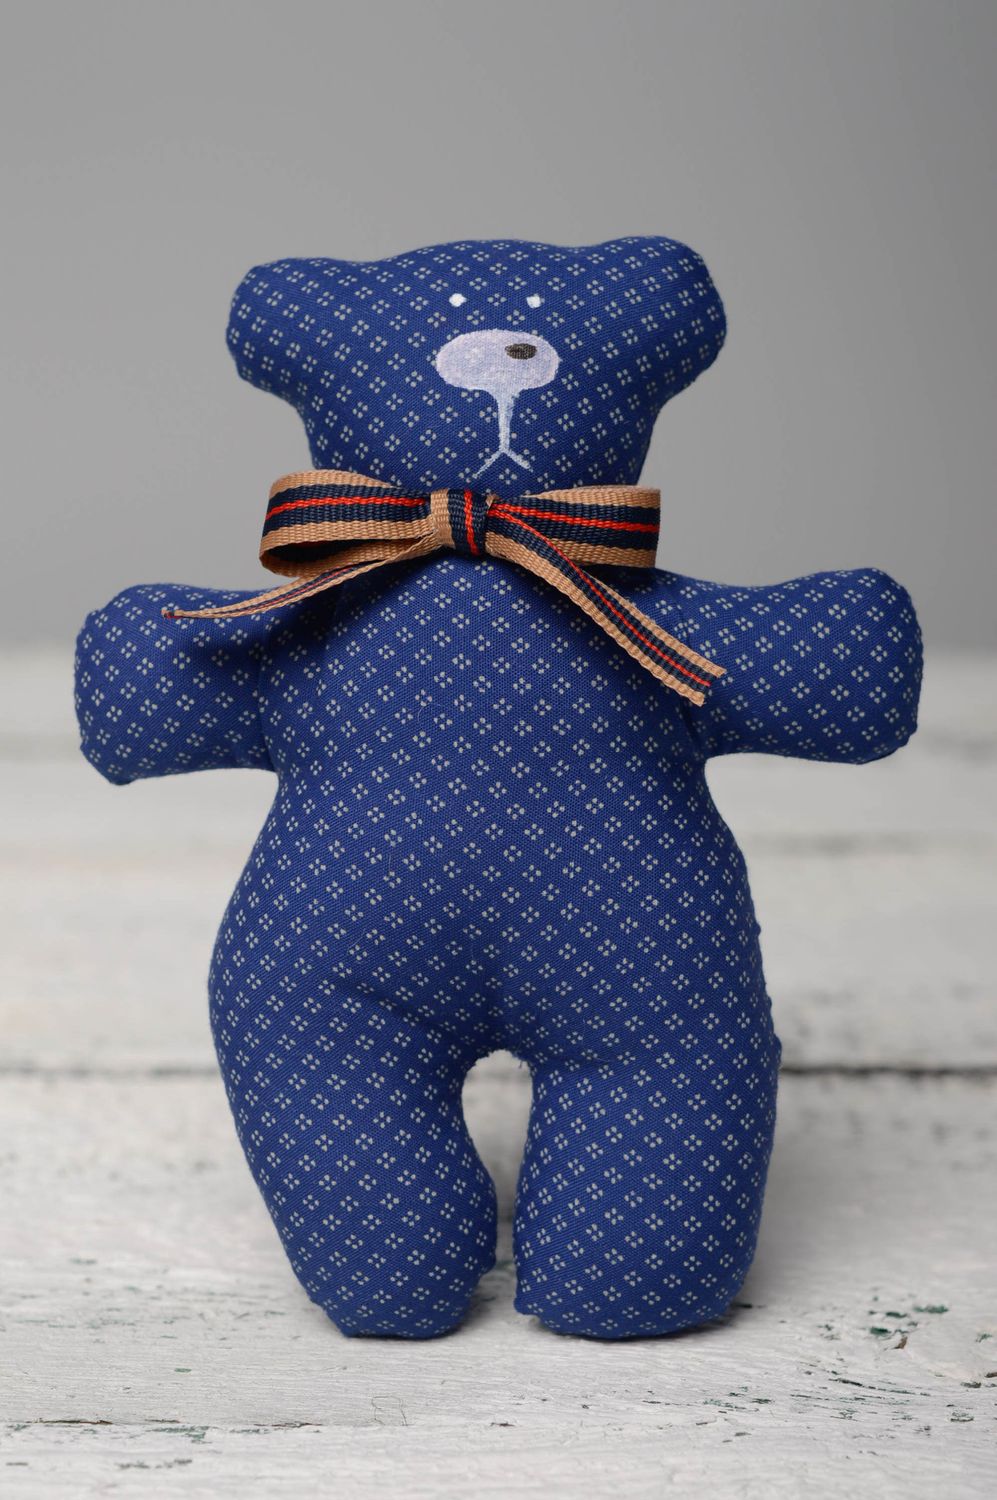 Мягкая игрушка из ткани пошитая вручную Мягкий синий мишка фото 1